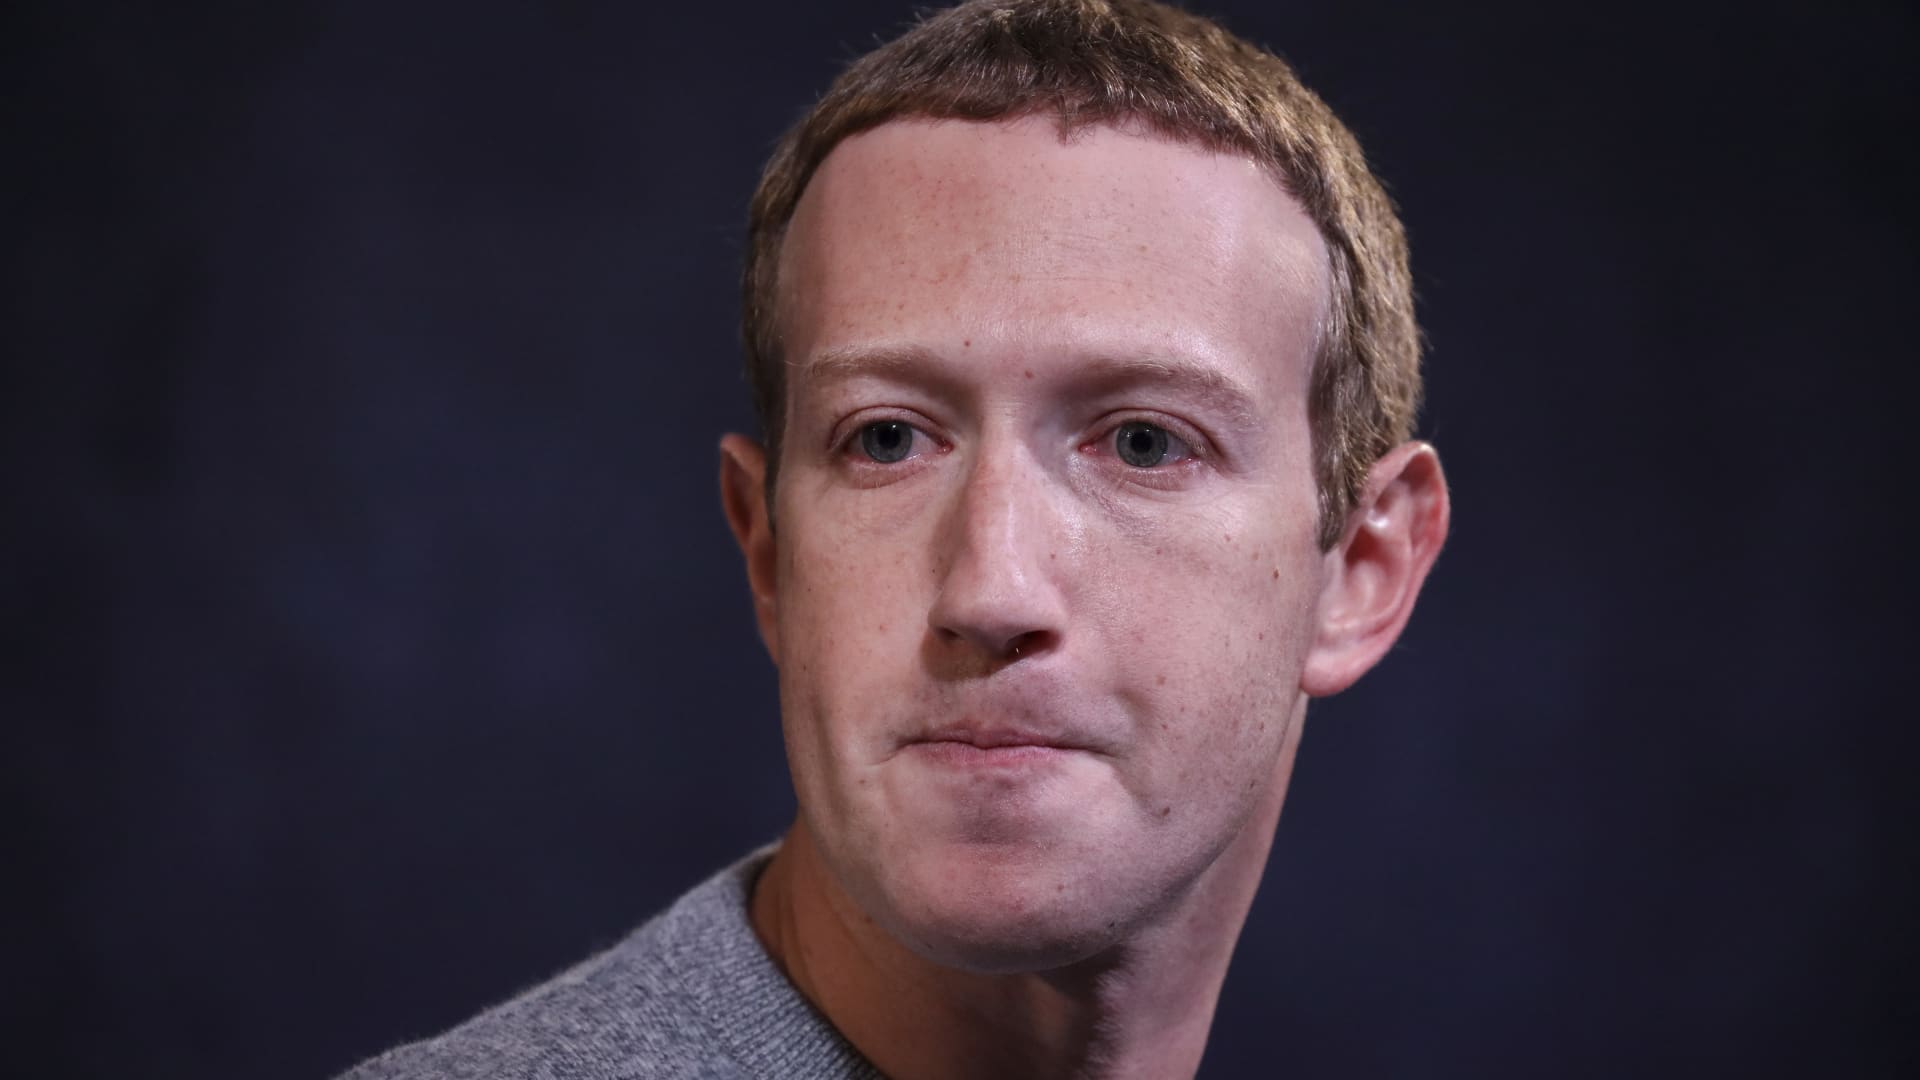 Mark Zuckerberg web really value falls  billion in extra of Meta earnings